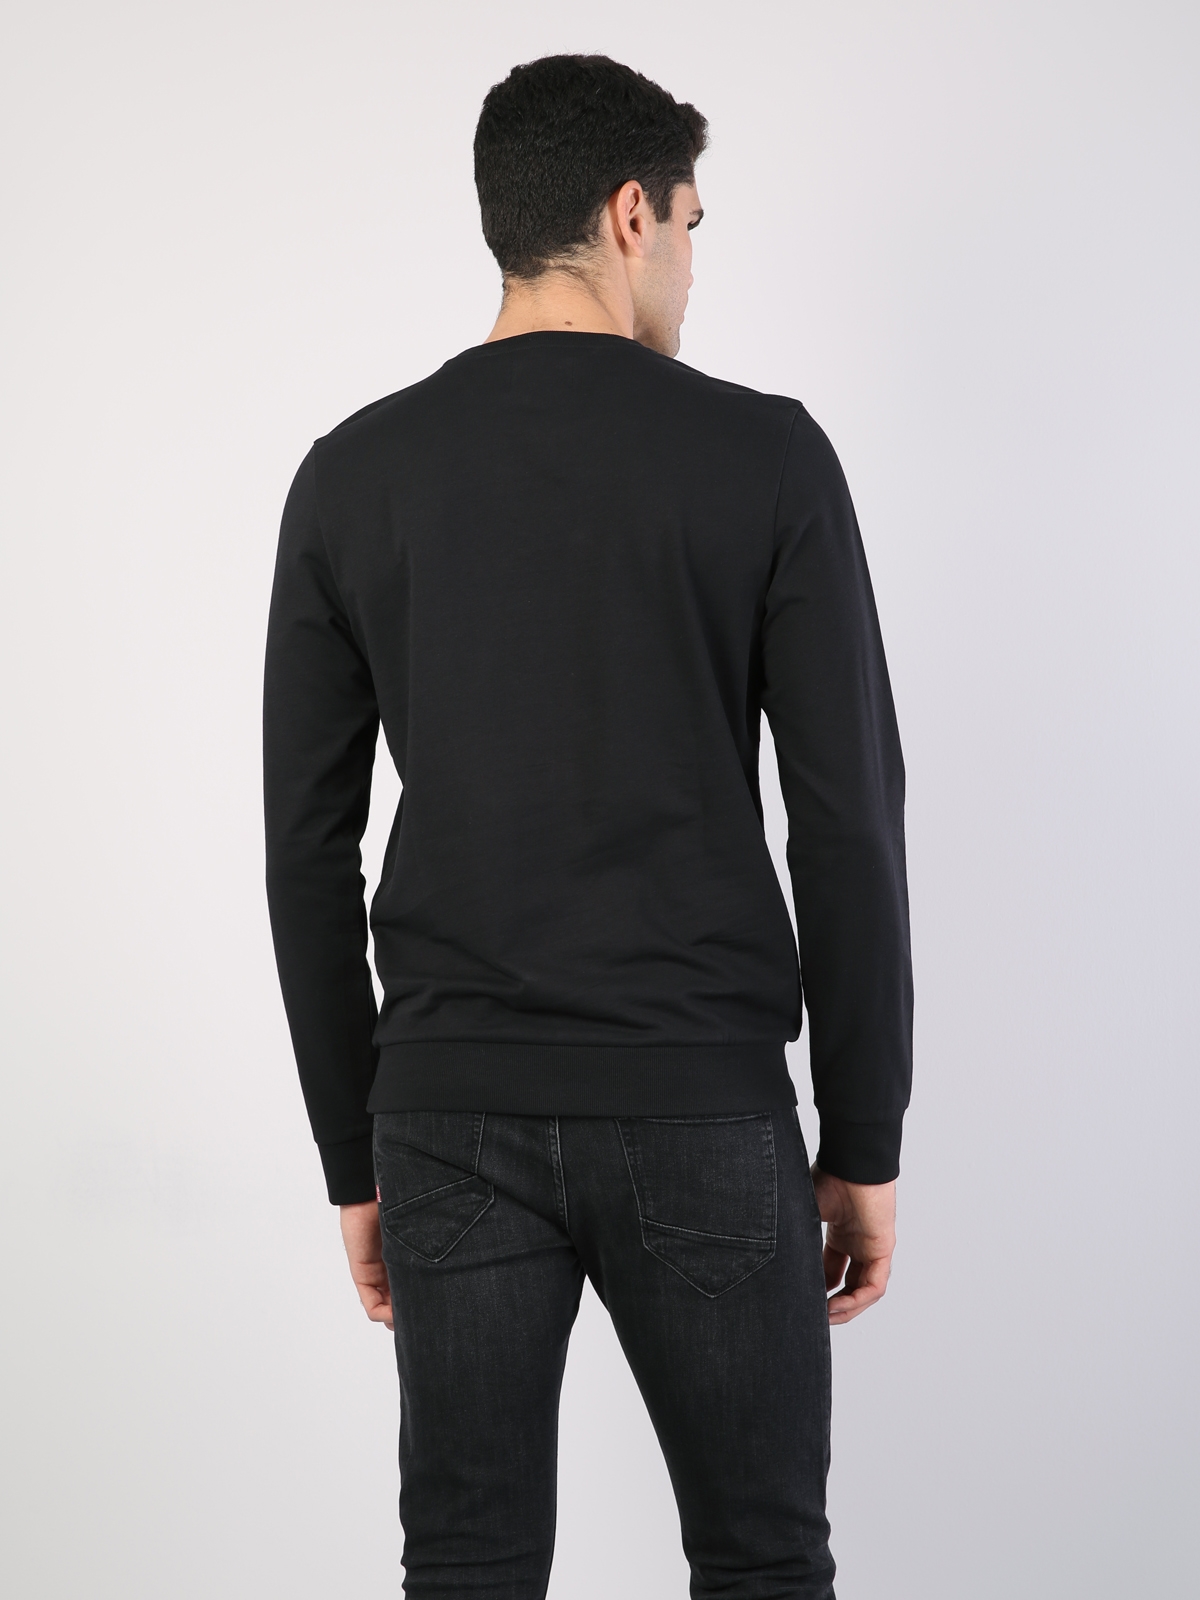 Siyah Baskılı Uzun Kol Sweatshirt